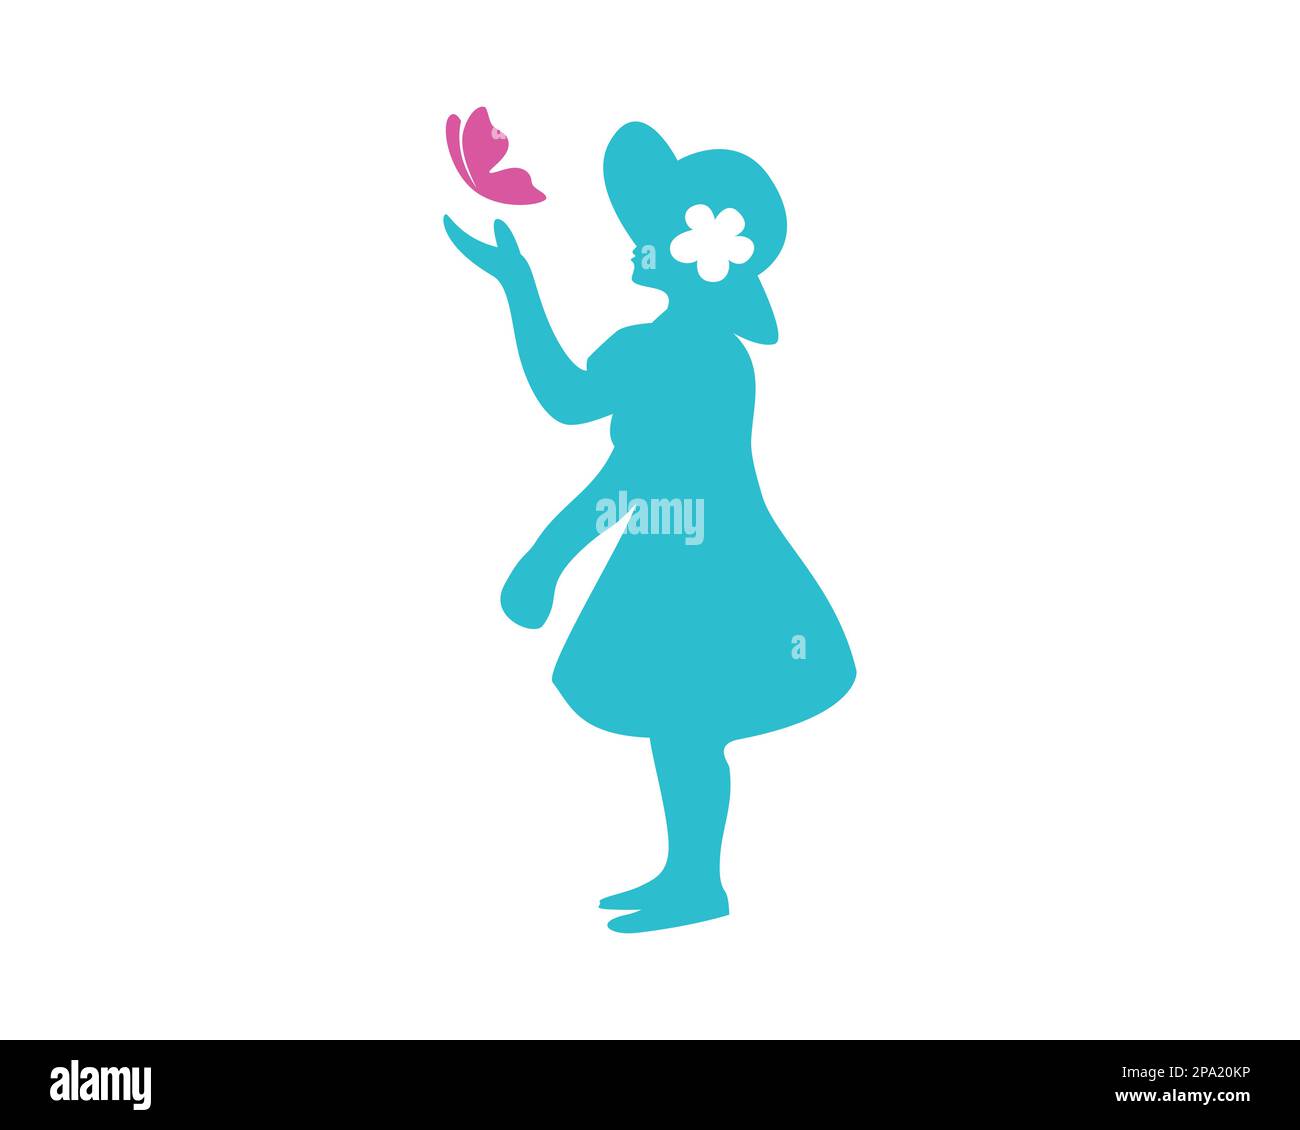 Ein Mädchen, das mit Schmetterling spielt, dargestellt im Silhouette-Stil Stock Vektor